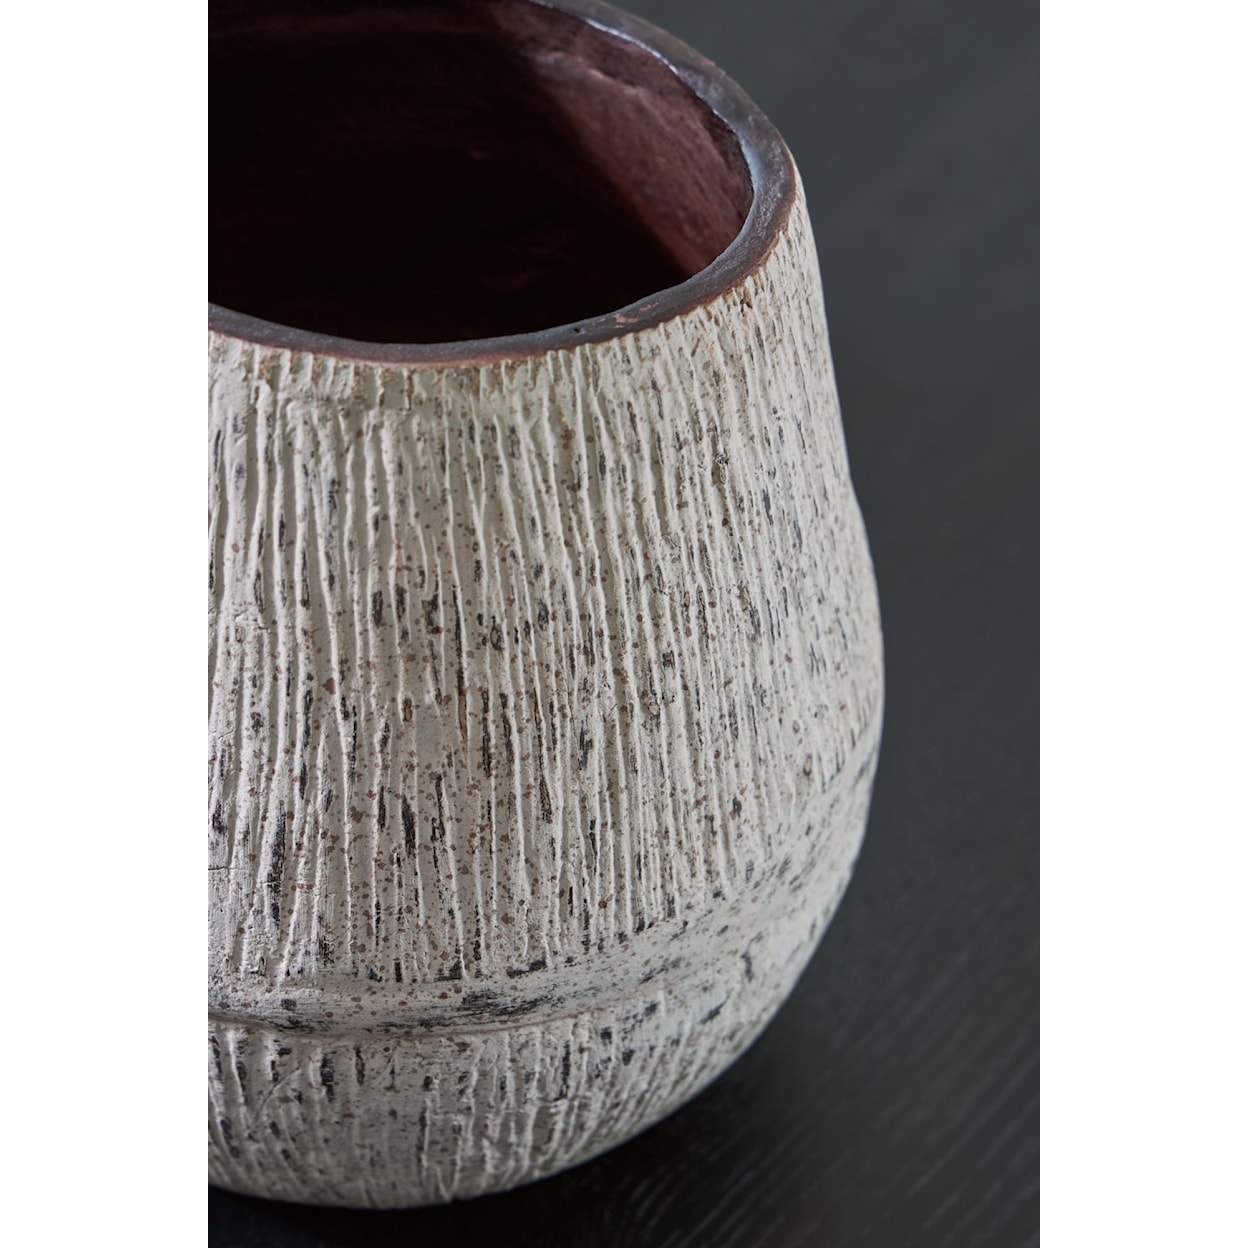 Signature Design Claymount Vase